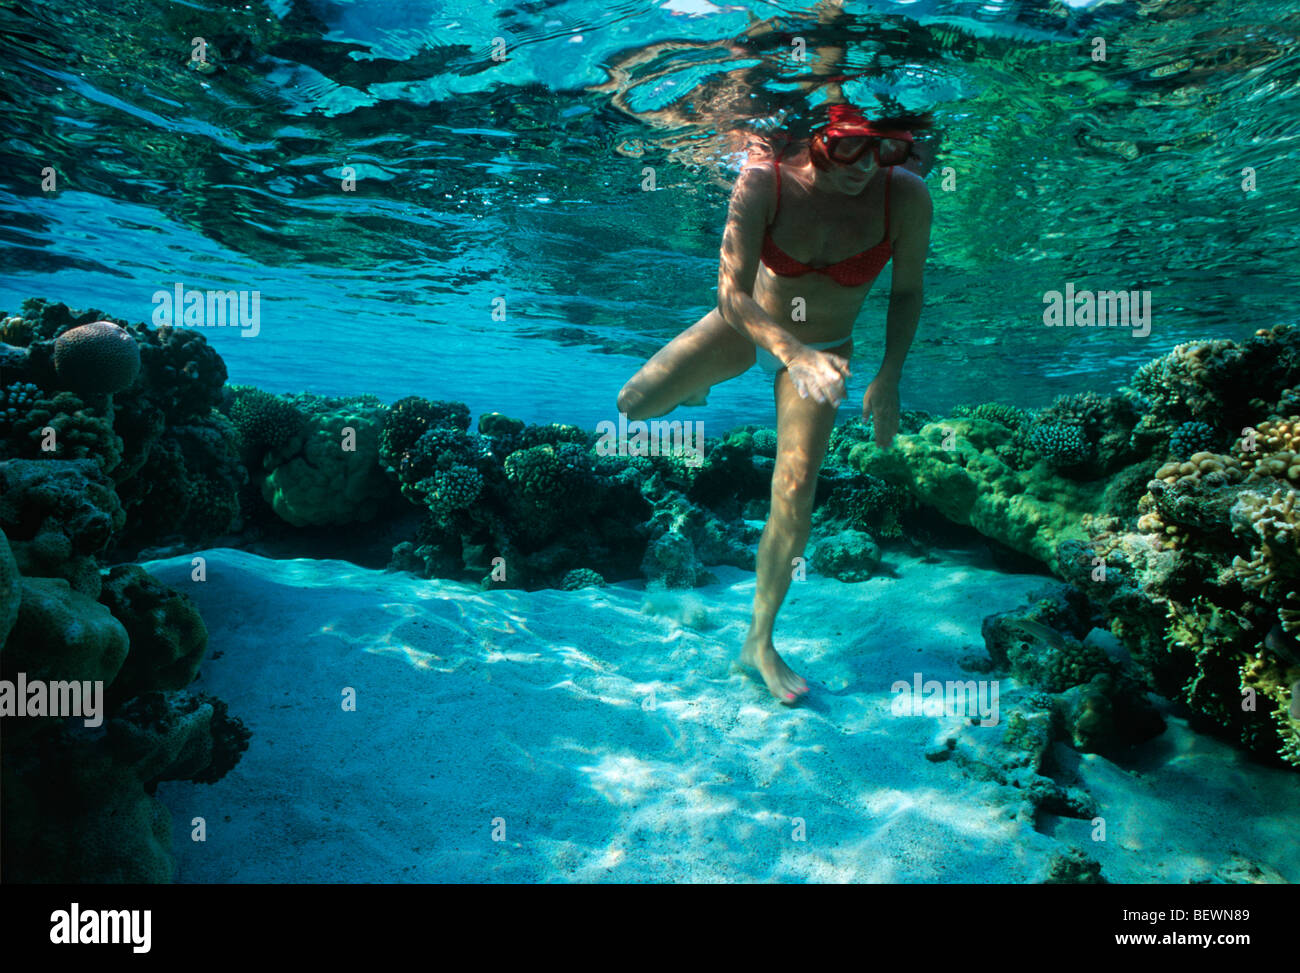 Free diver explores coral reef. Sinai, Egypt - Red Sea Stock Photo